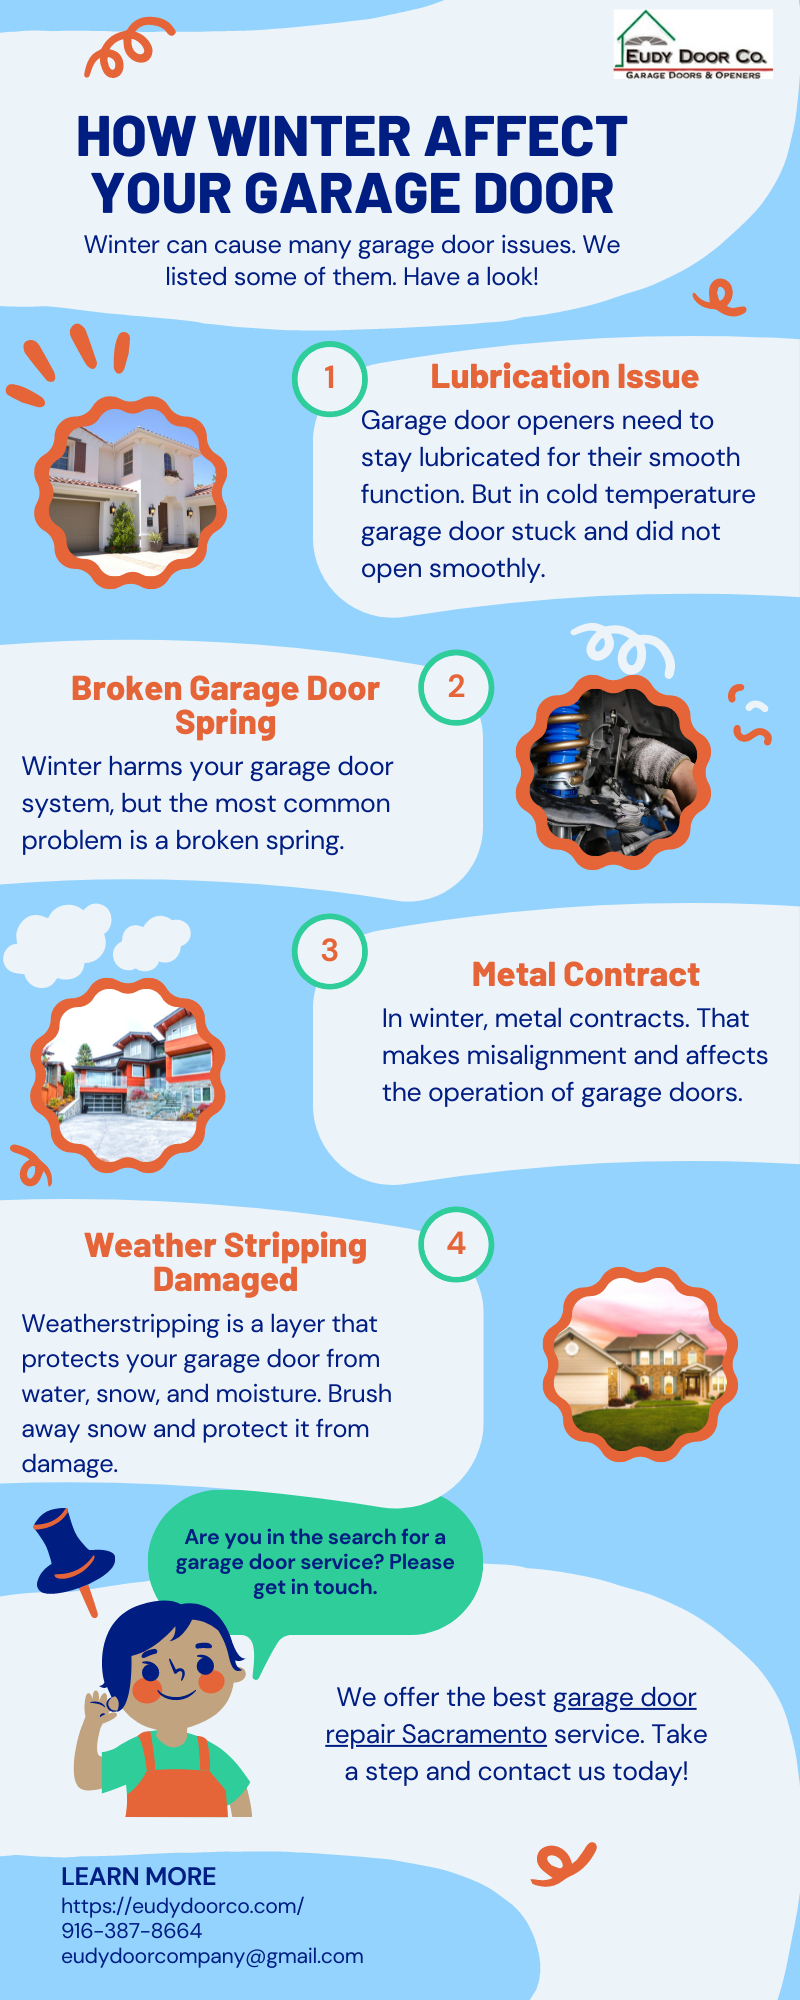 How Winter Affect Your Garage Door